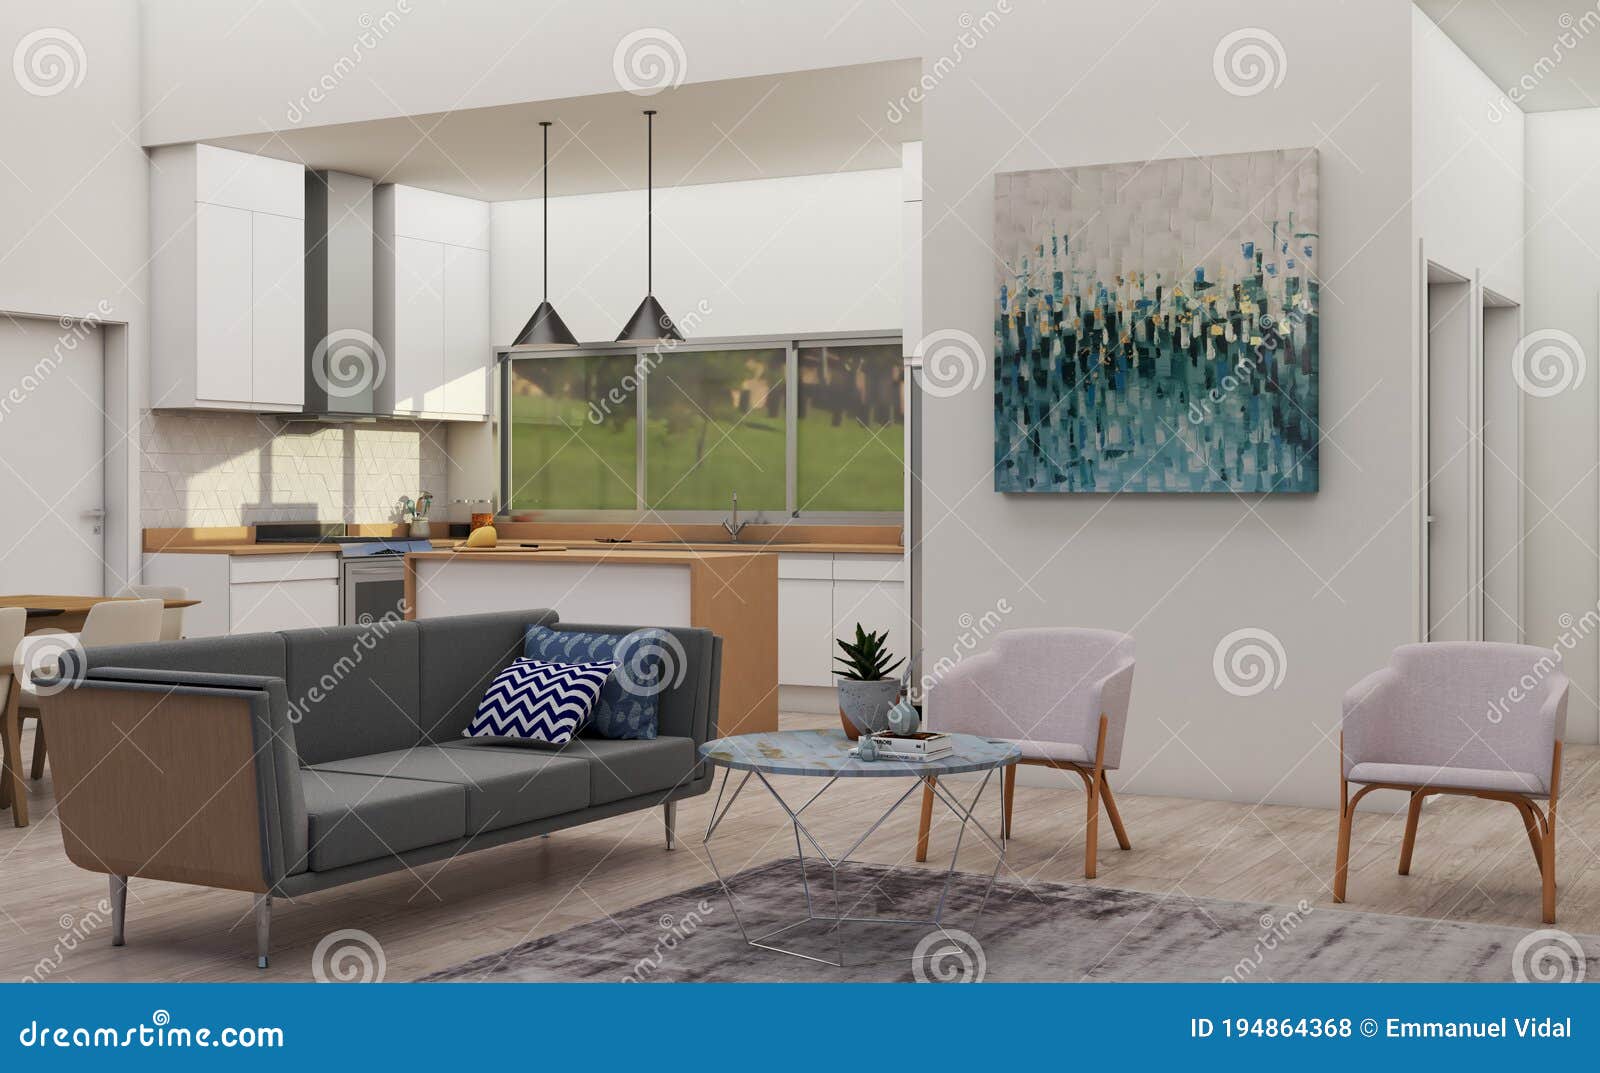 nordic open living room 1 3d rendering 3d 